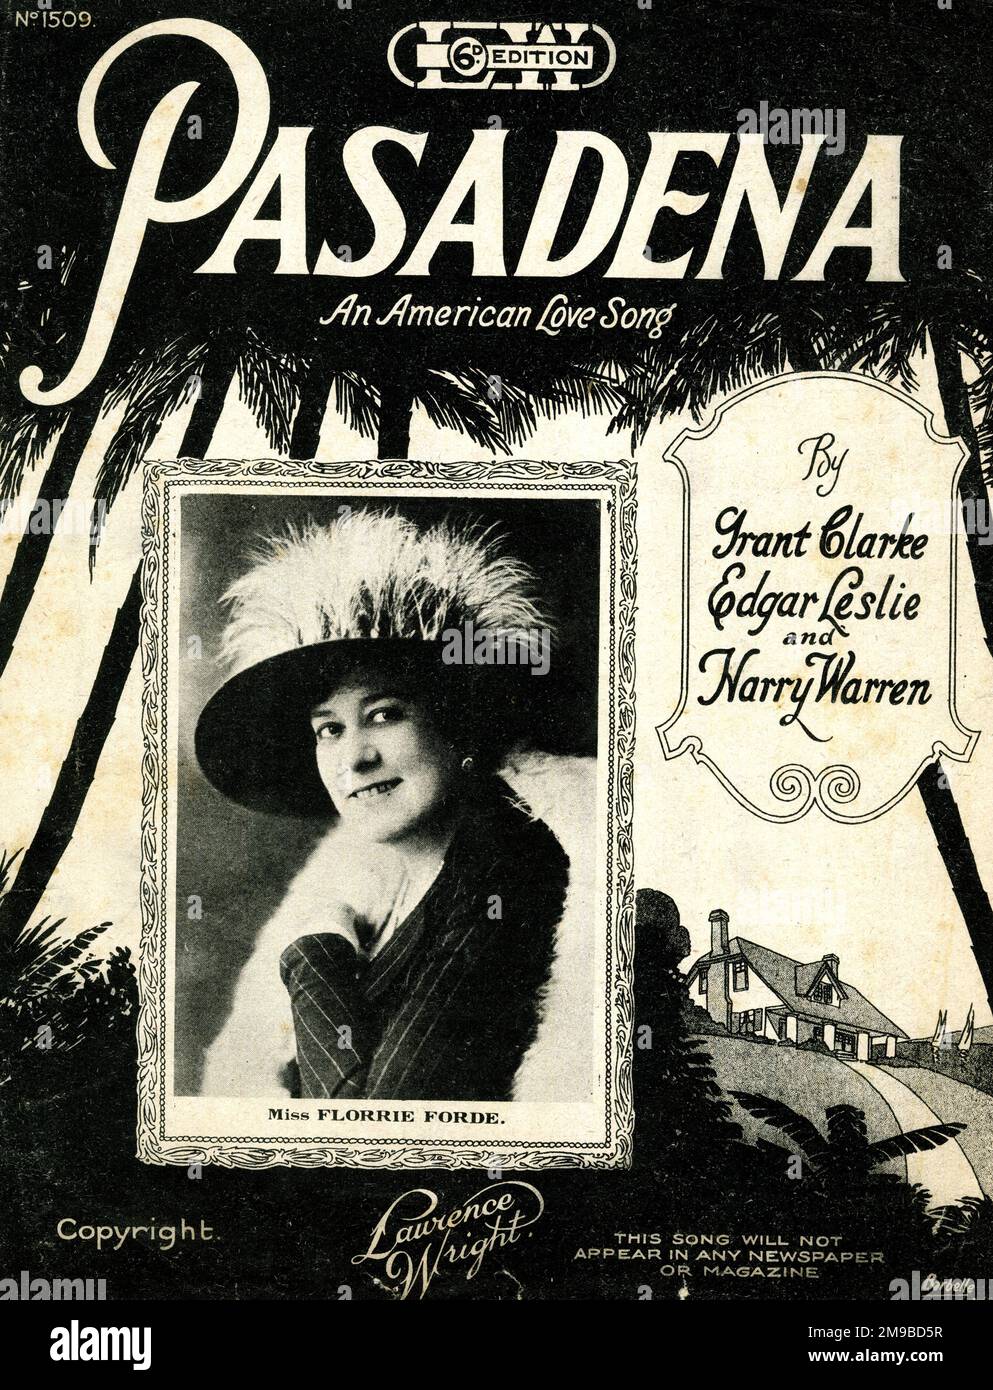 Copertina musicale, Pasadena, una canzone d'amore americana, di Grant Clarke, Edgar Leslie e Harry Warren, cantata da Miss Florrie Forde Foto Stock